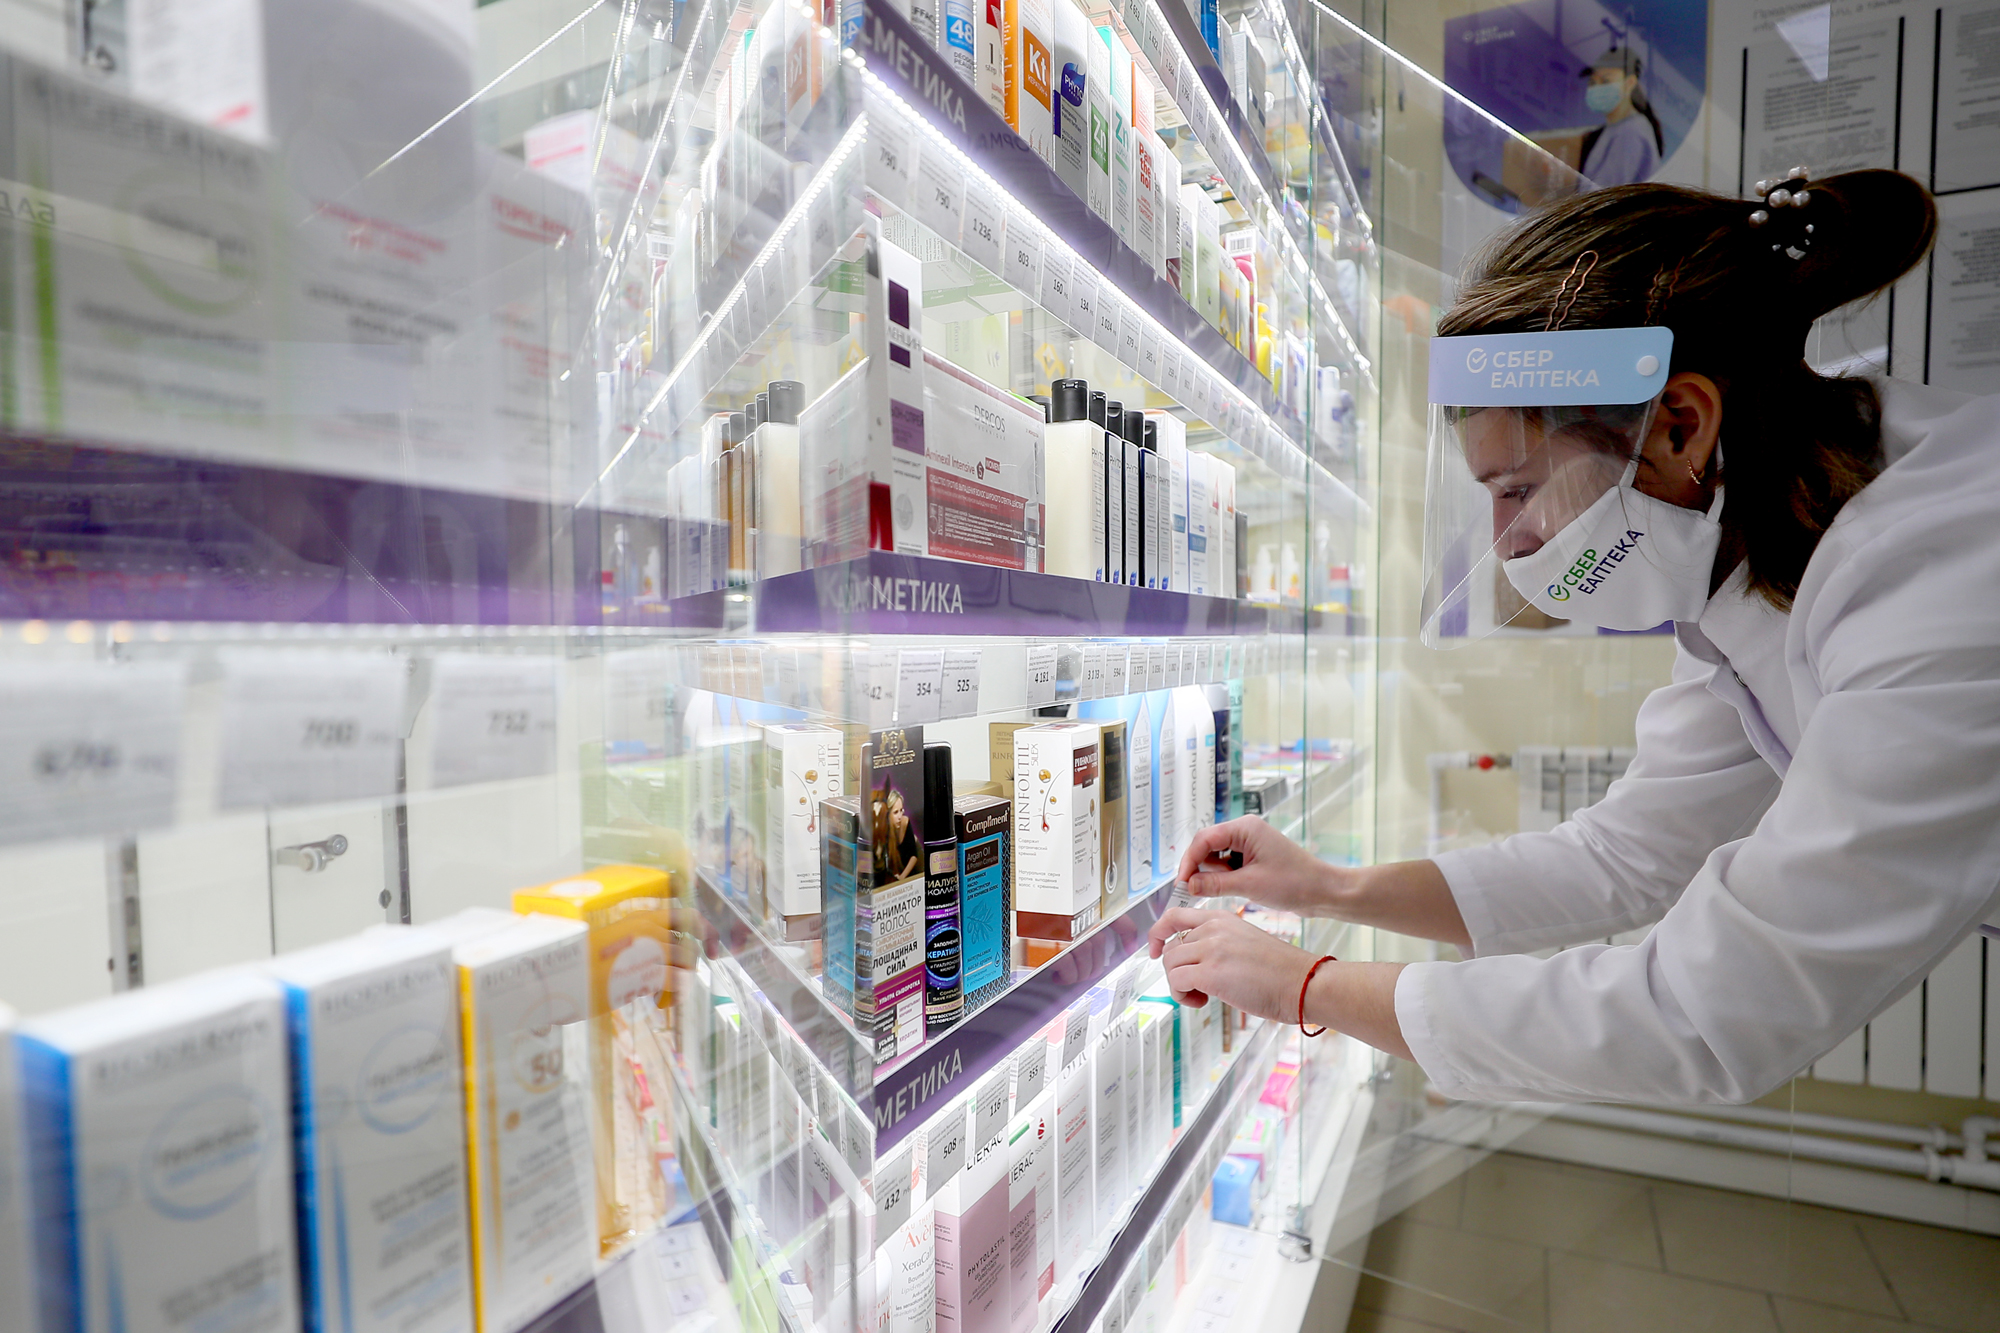 Сотрудница интернет-магазина "Сбер аптека" расставляет ценники на препараты во время открытия аптеки. Фото © Владимир Смирнов / ТАСС